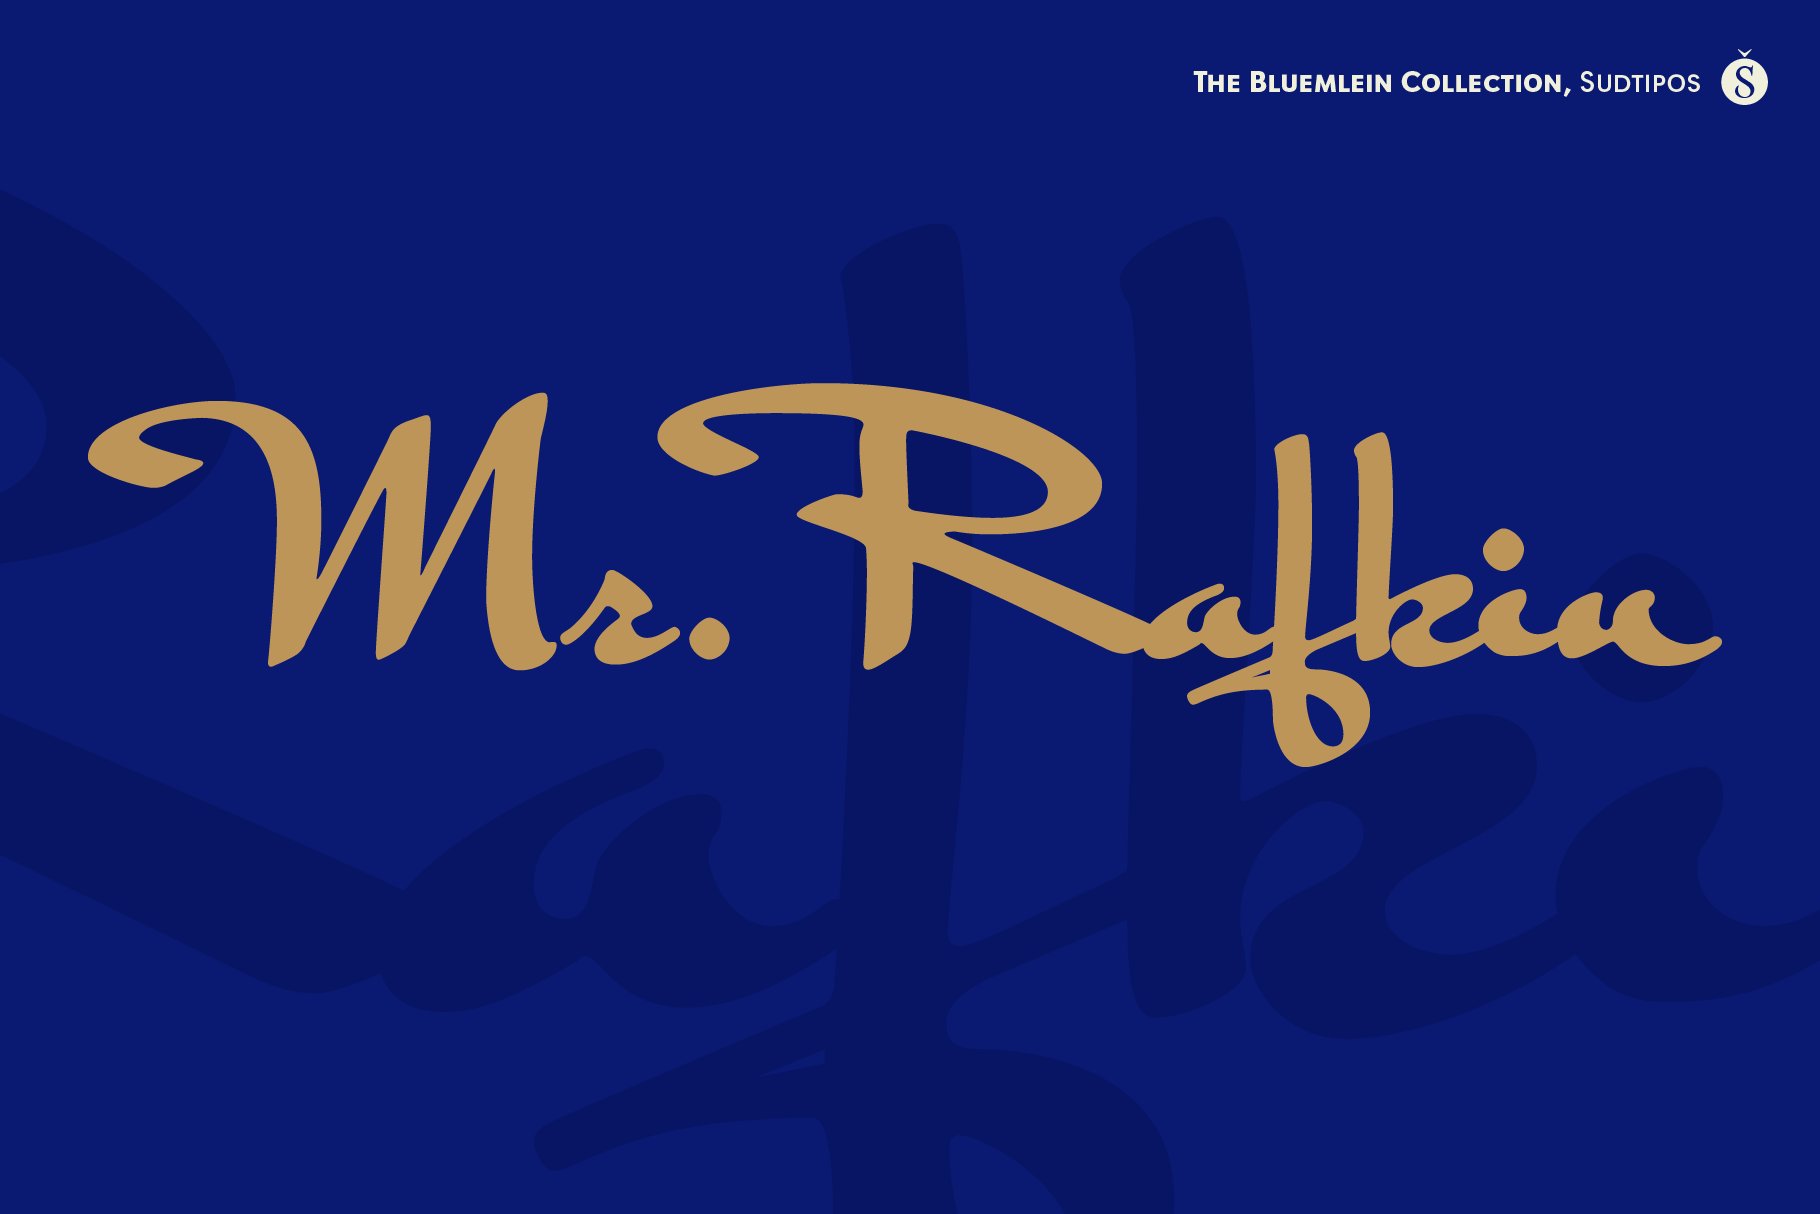 Mr Rafkin Pro cover image.